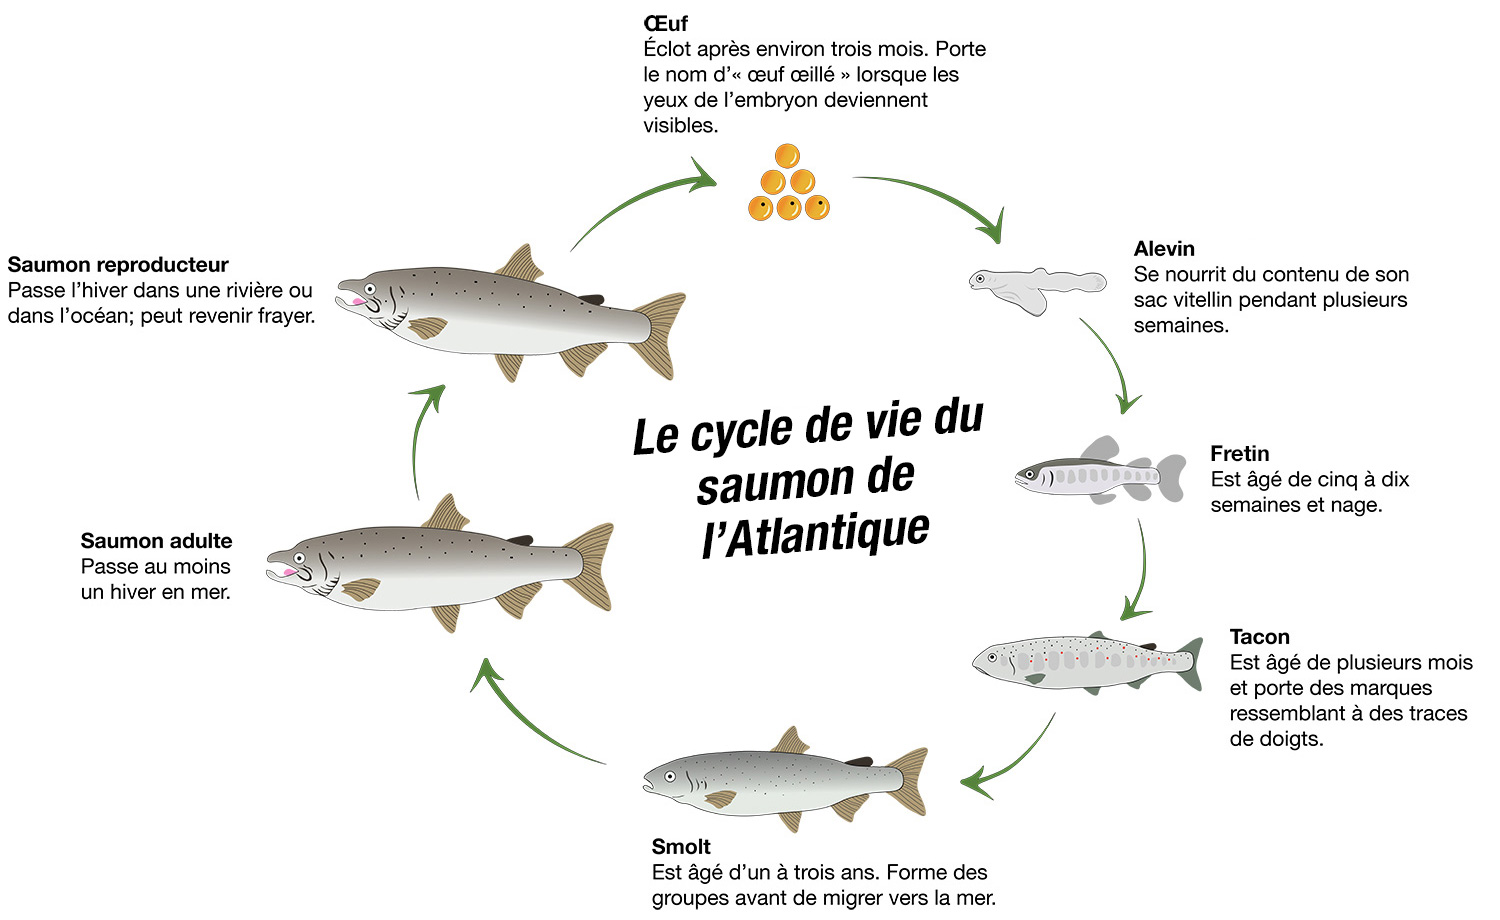 Le cycle de vie du saumon de l'Atlantique